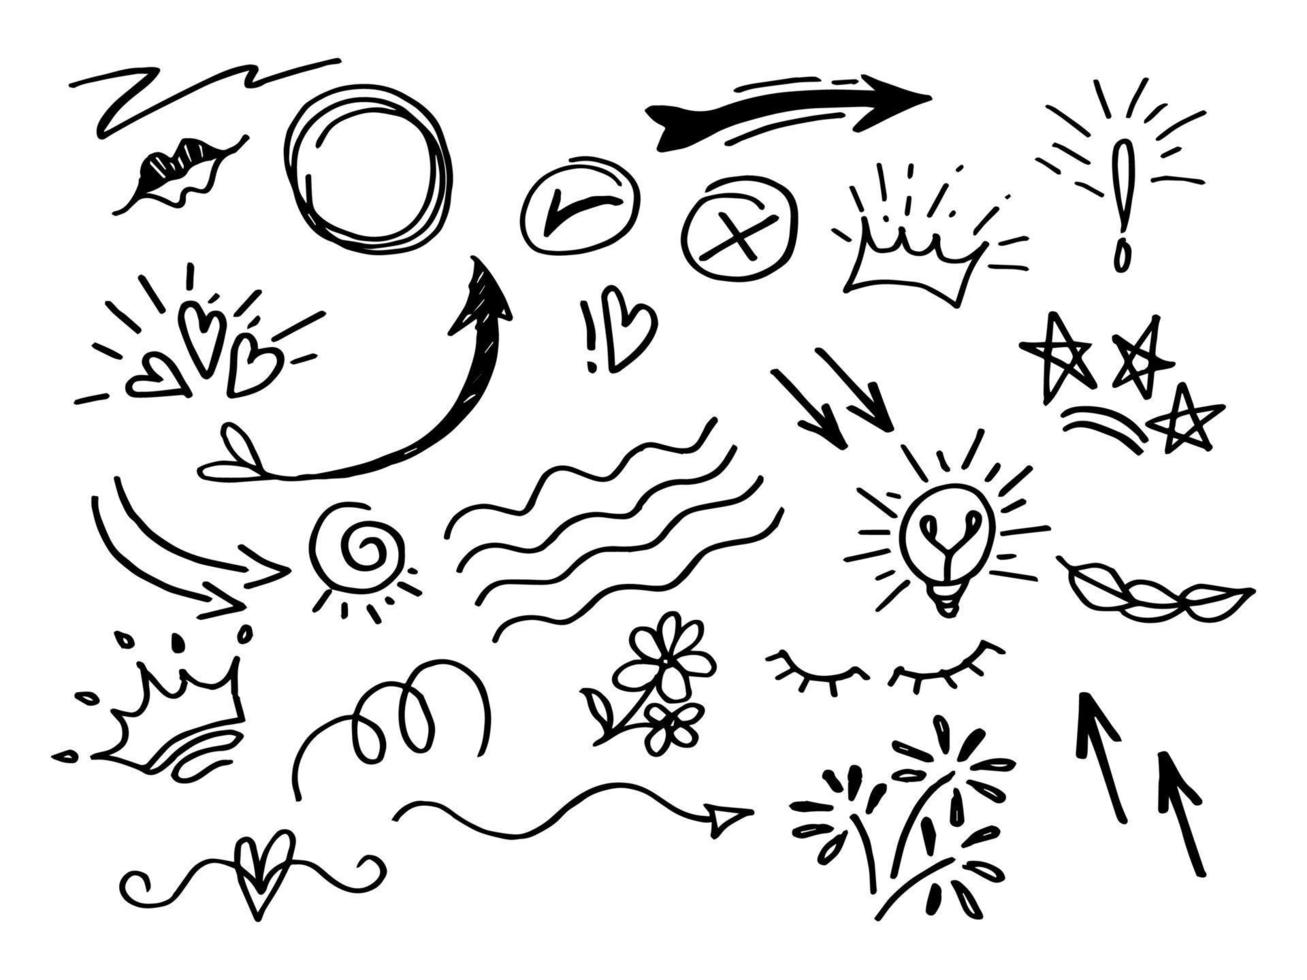 conjunto de elementos de design desenhado à mão. swishes, swoops, redemoinho, seta, coração, amor, coroa, flor, destaque de texto e ênfase vetor